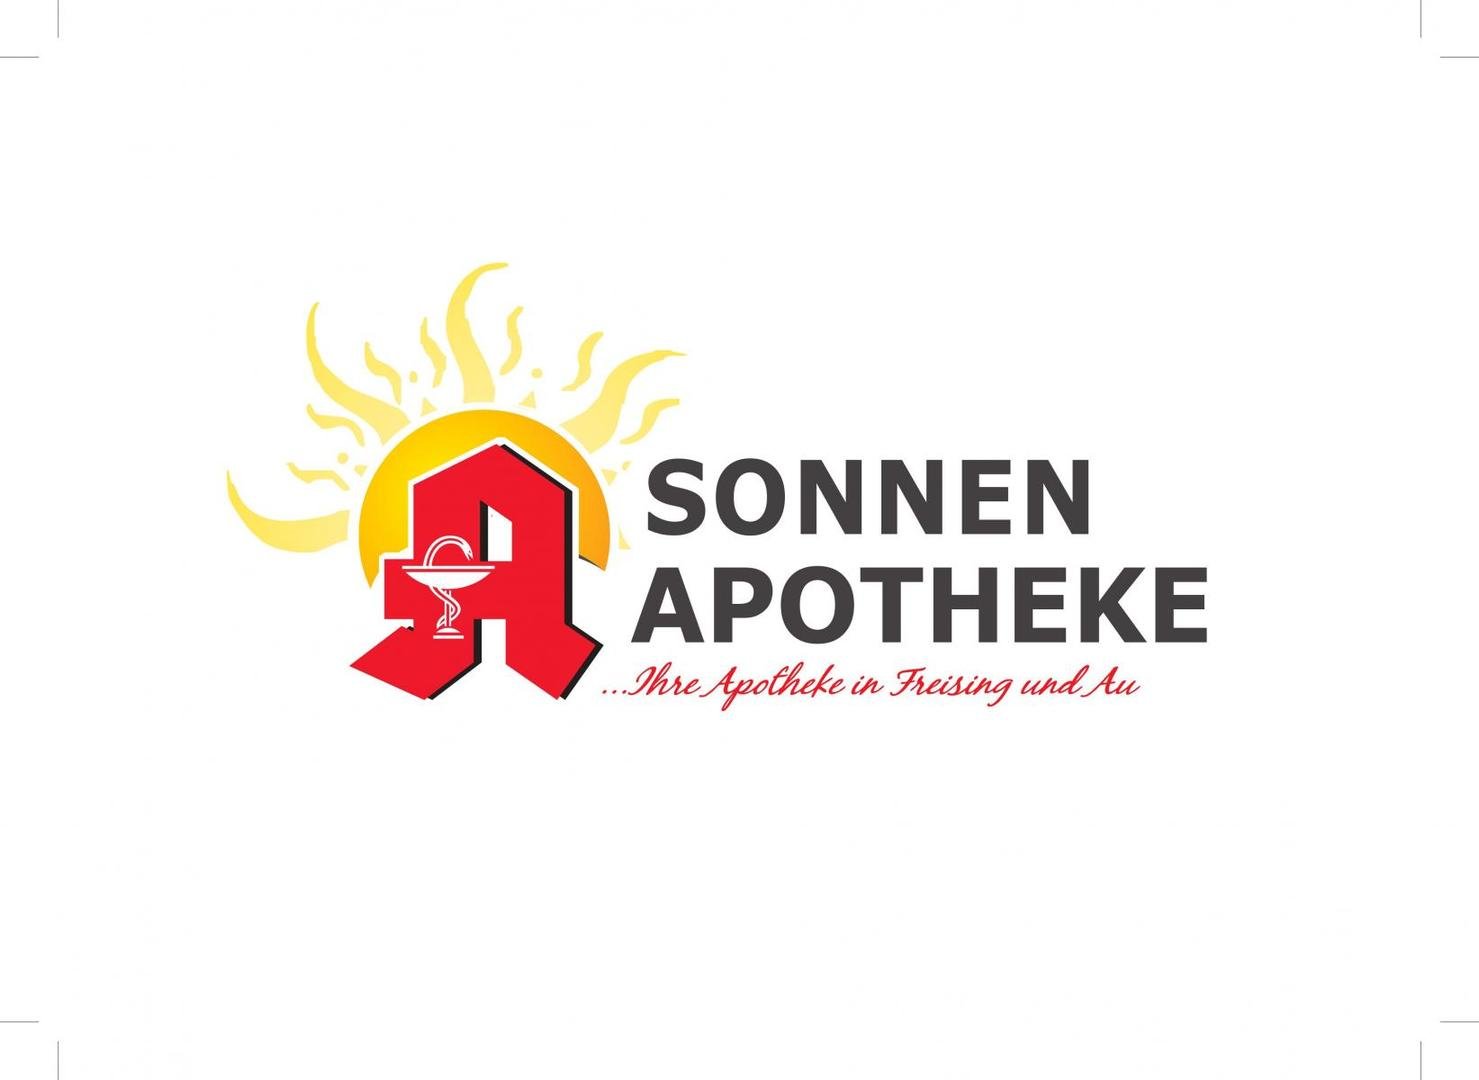 Sonnen Apotheke Au Logo